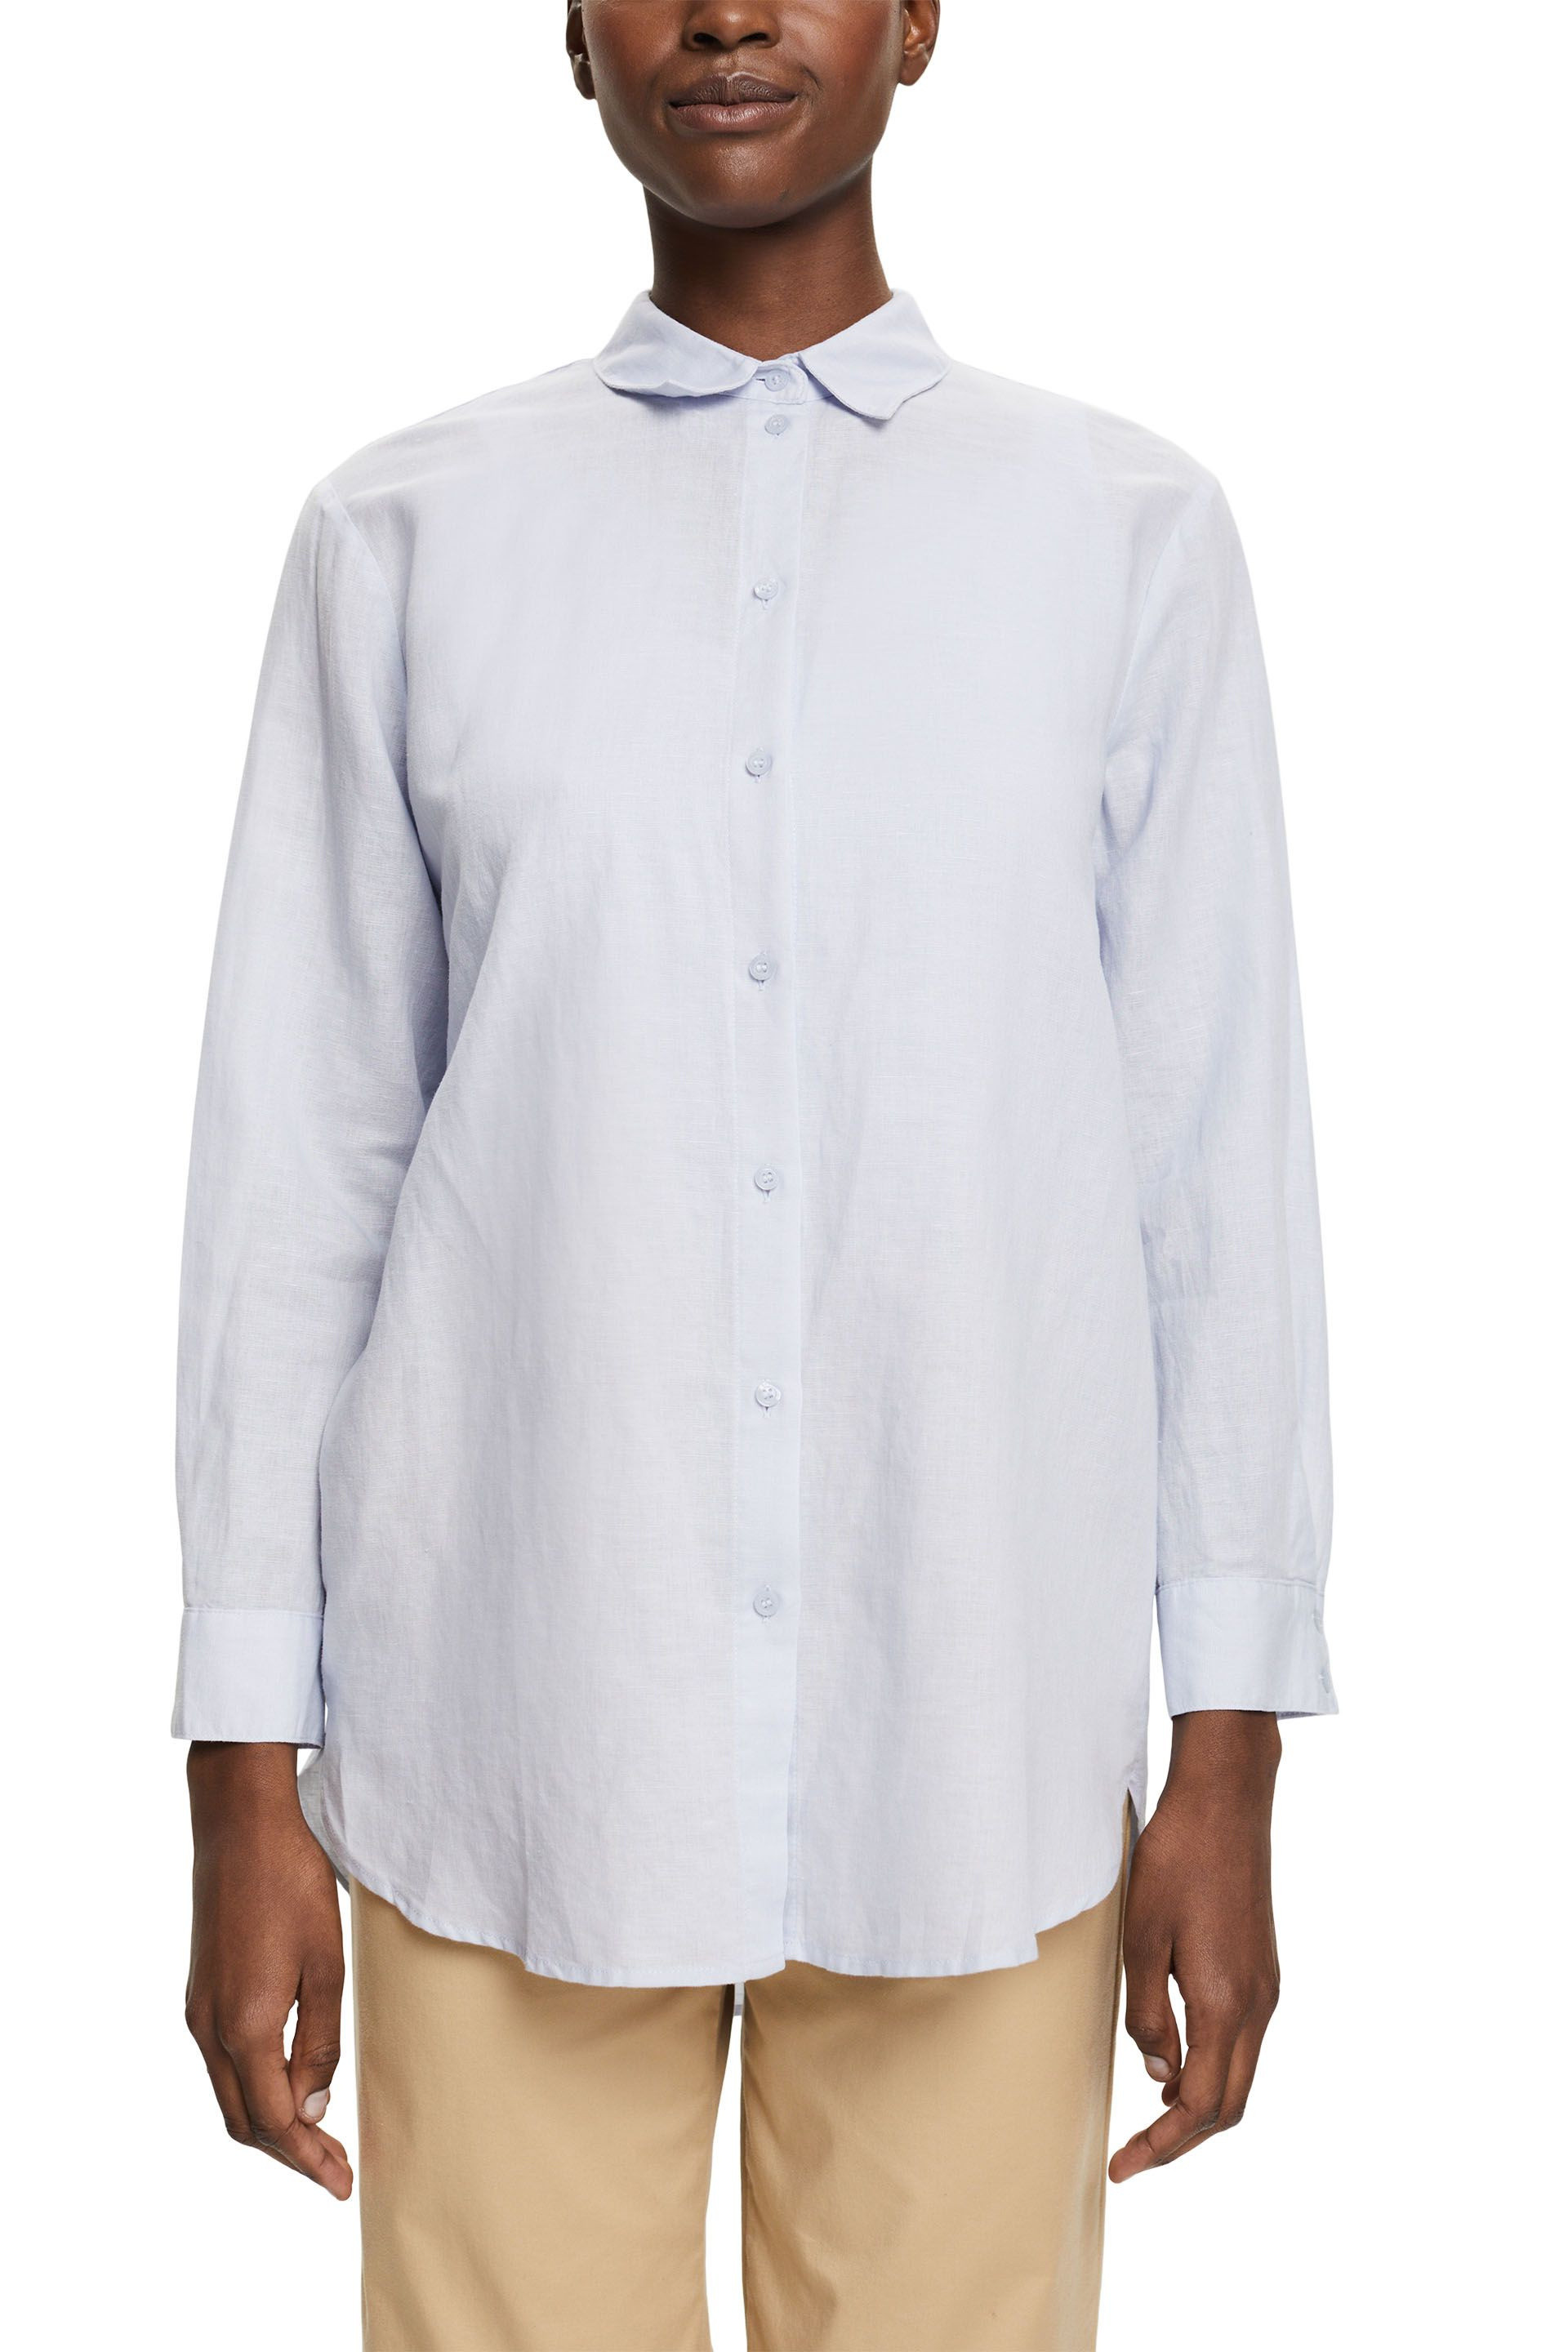 Esprit - Linen blend blouse, Light Blue, large image number 1